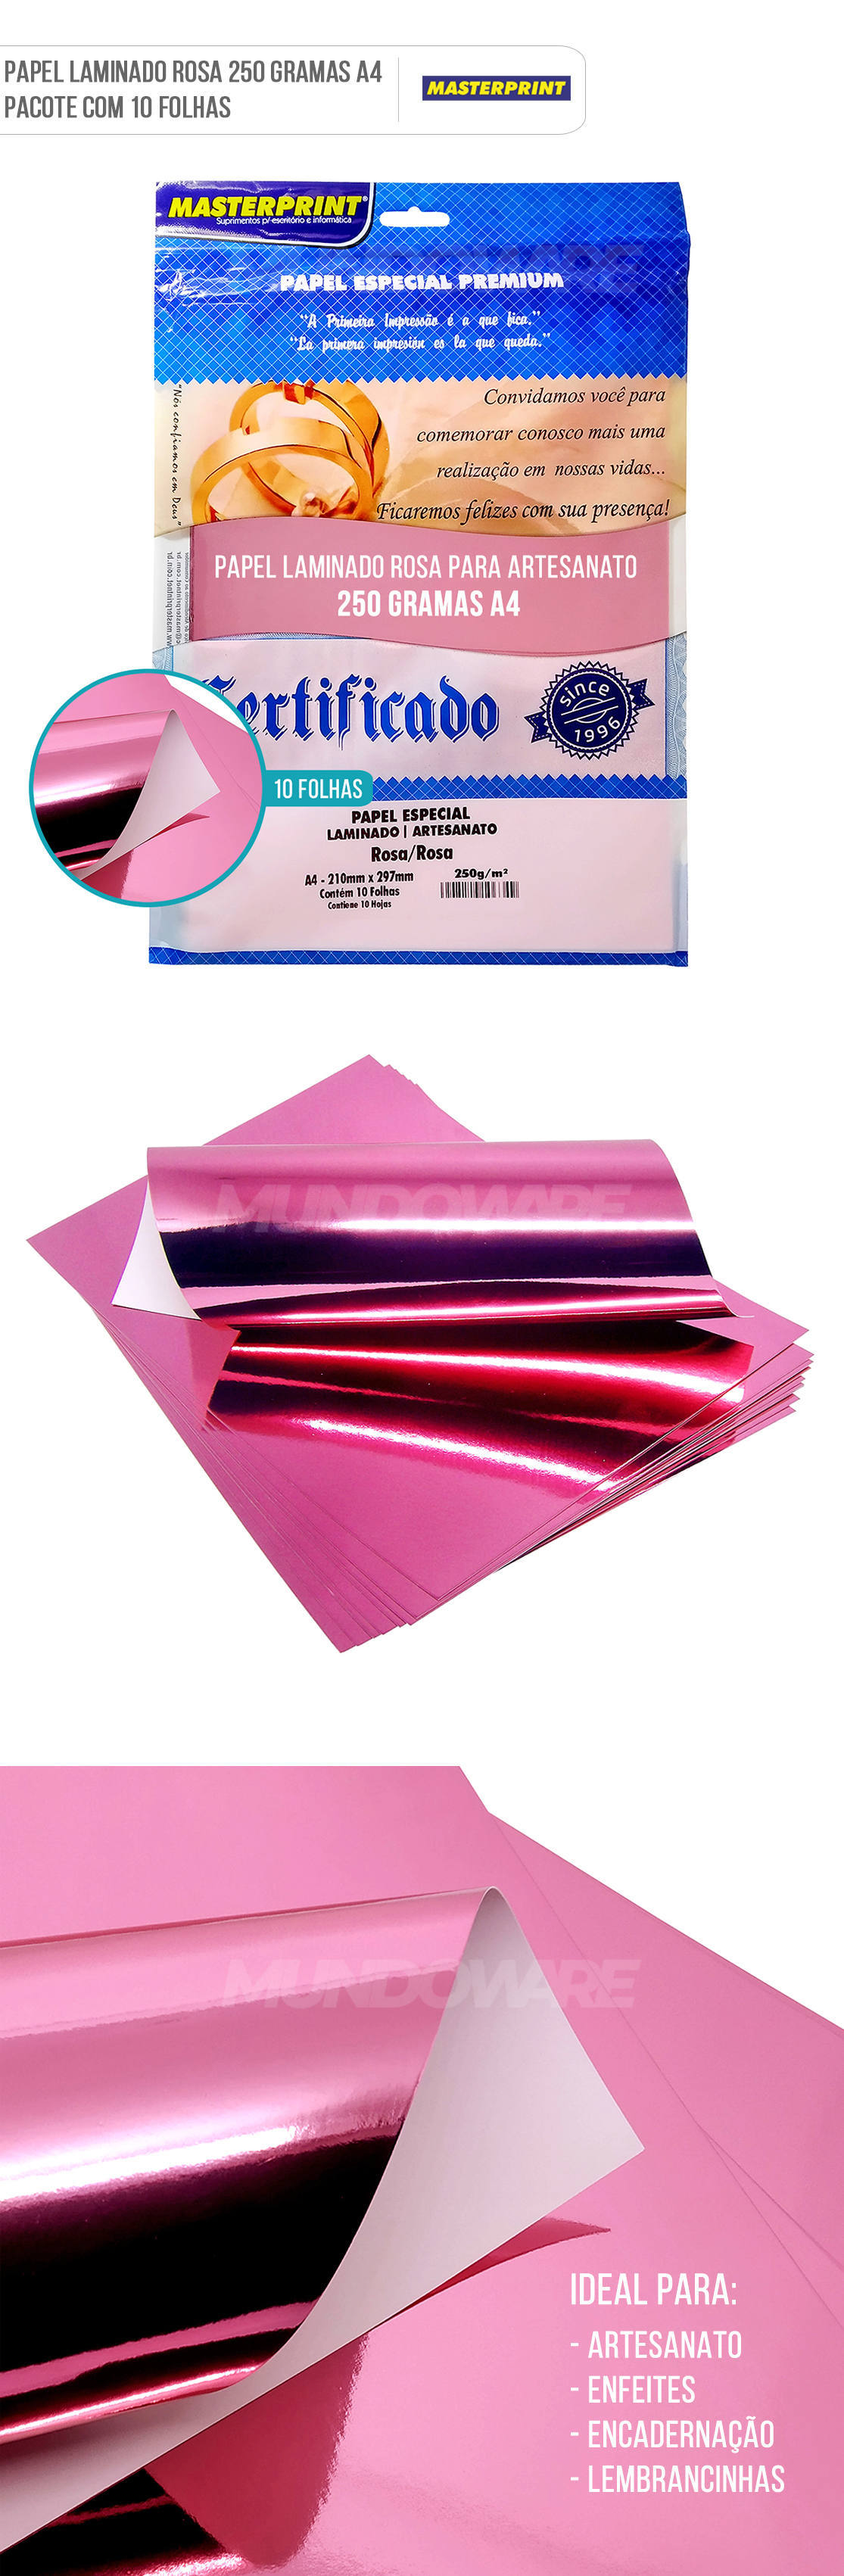 Papel Laminado Rosa A4 250g para Artesanato Enfeites Lembrancinhas Pacote com 10 Folhas Masterprint